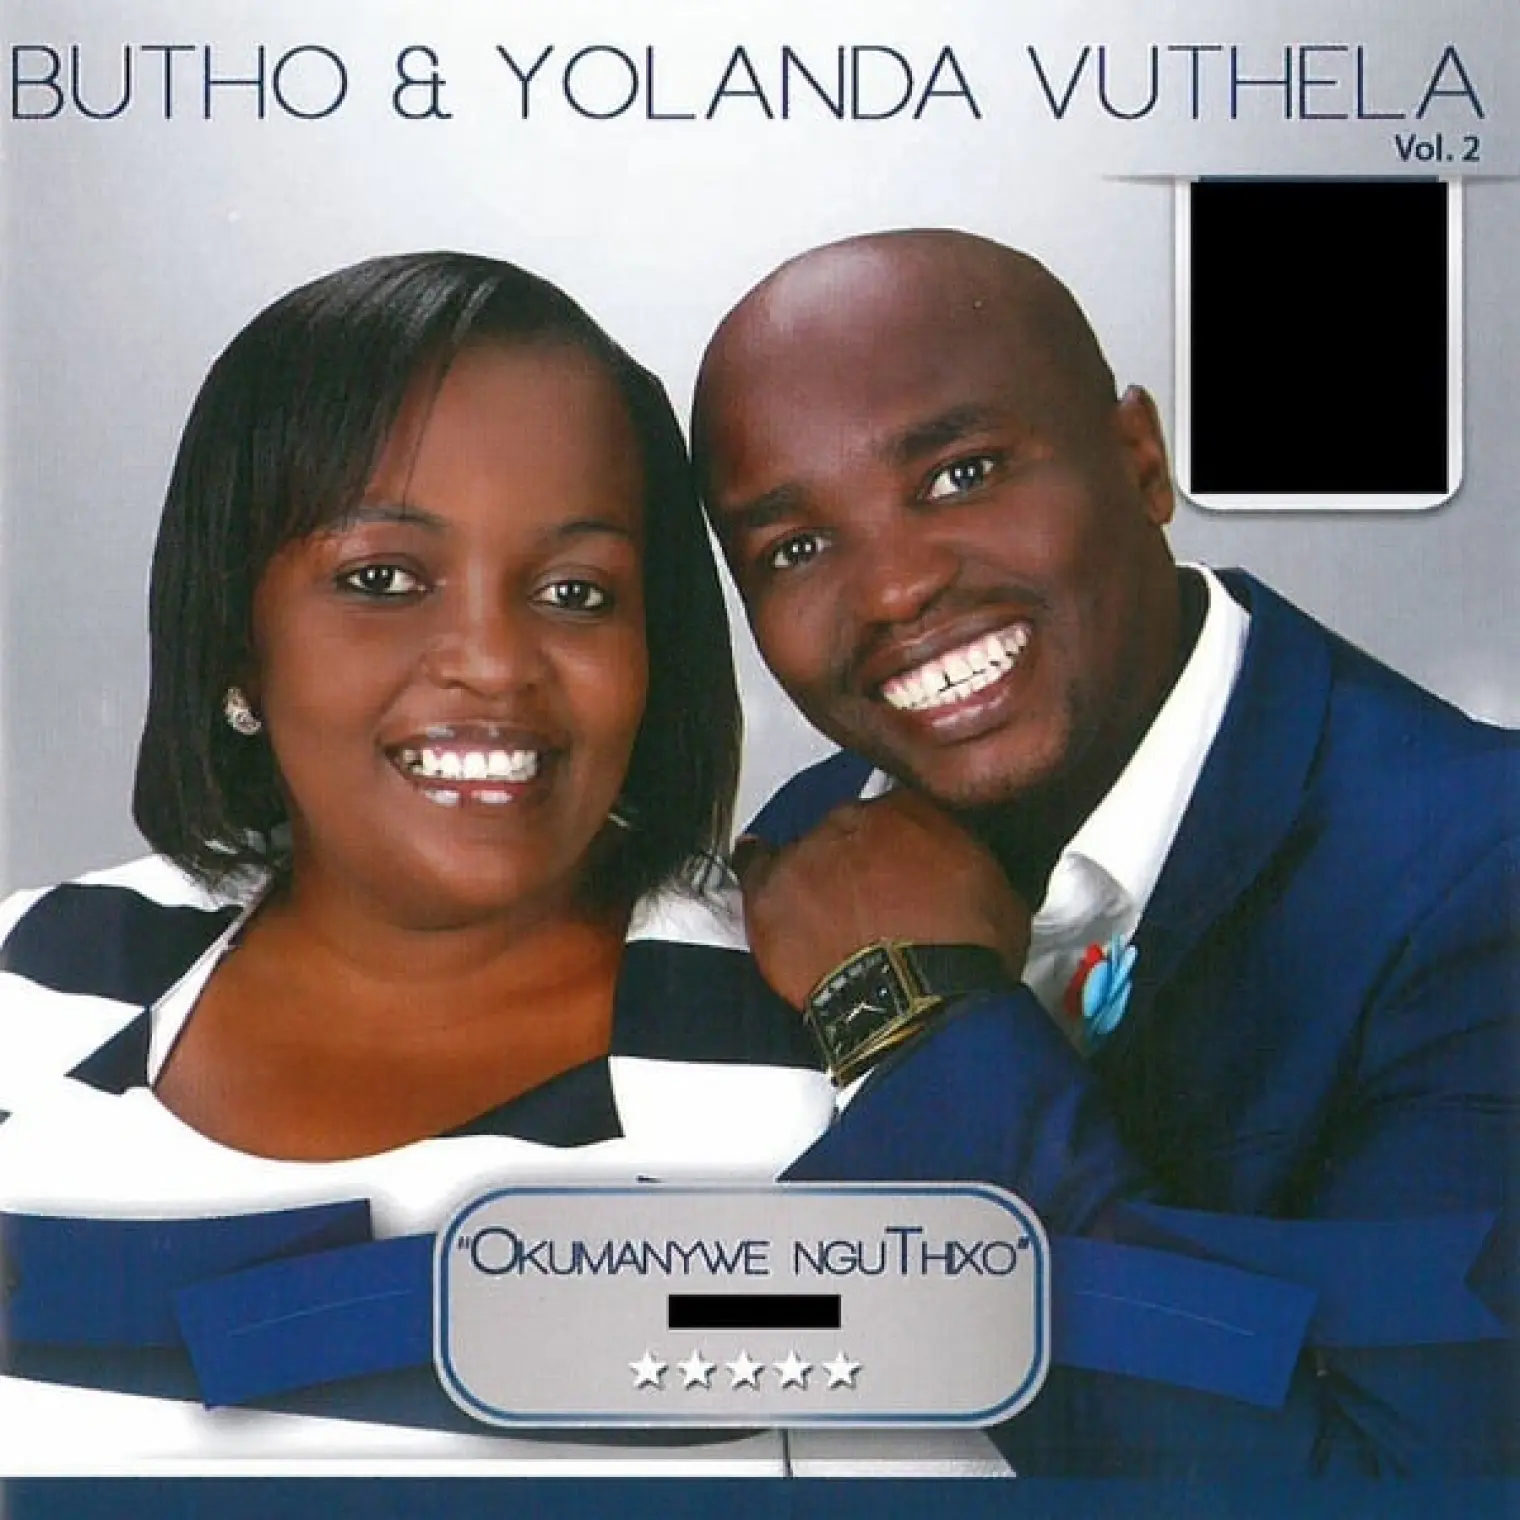 Okumanywe nguThixo, Vol. 2 -  Butho & Yolanda Vuthela 